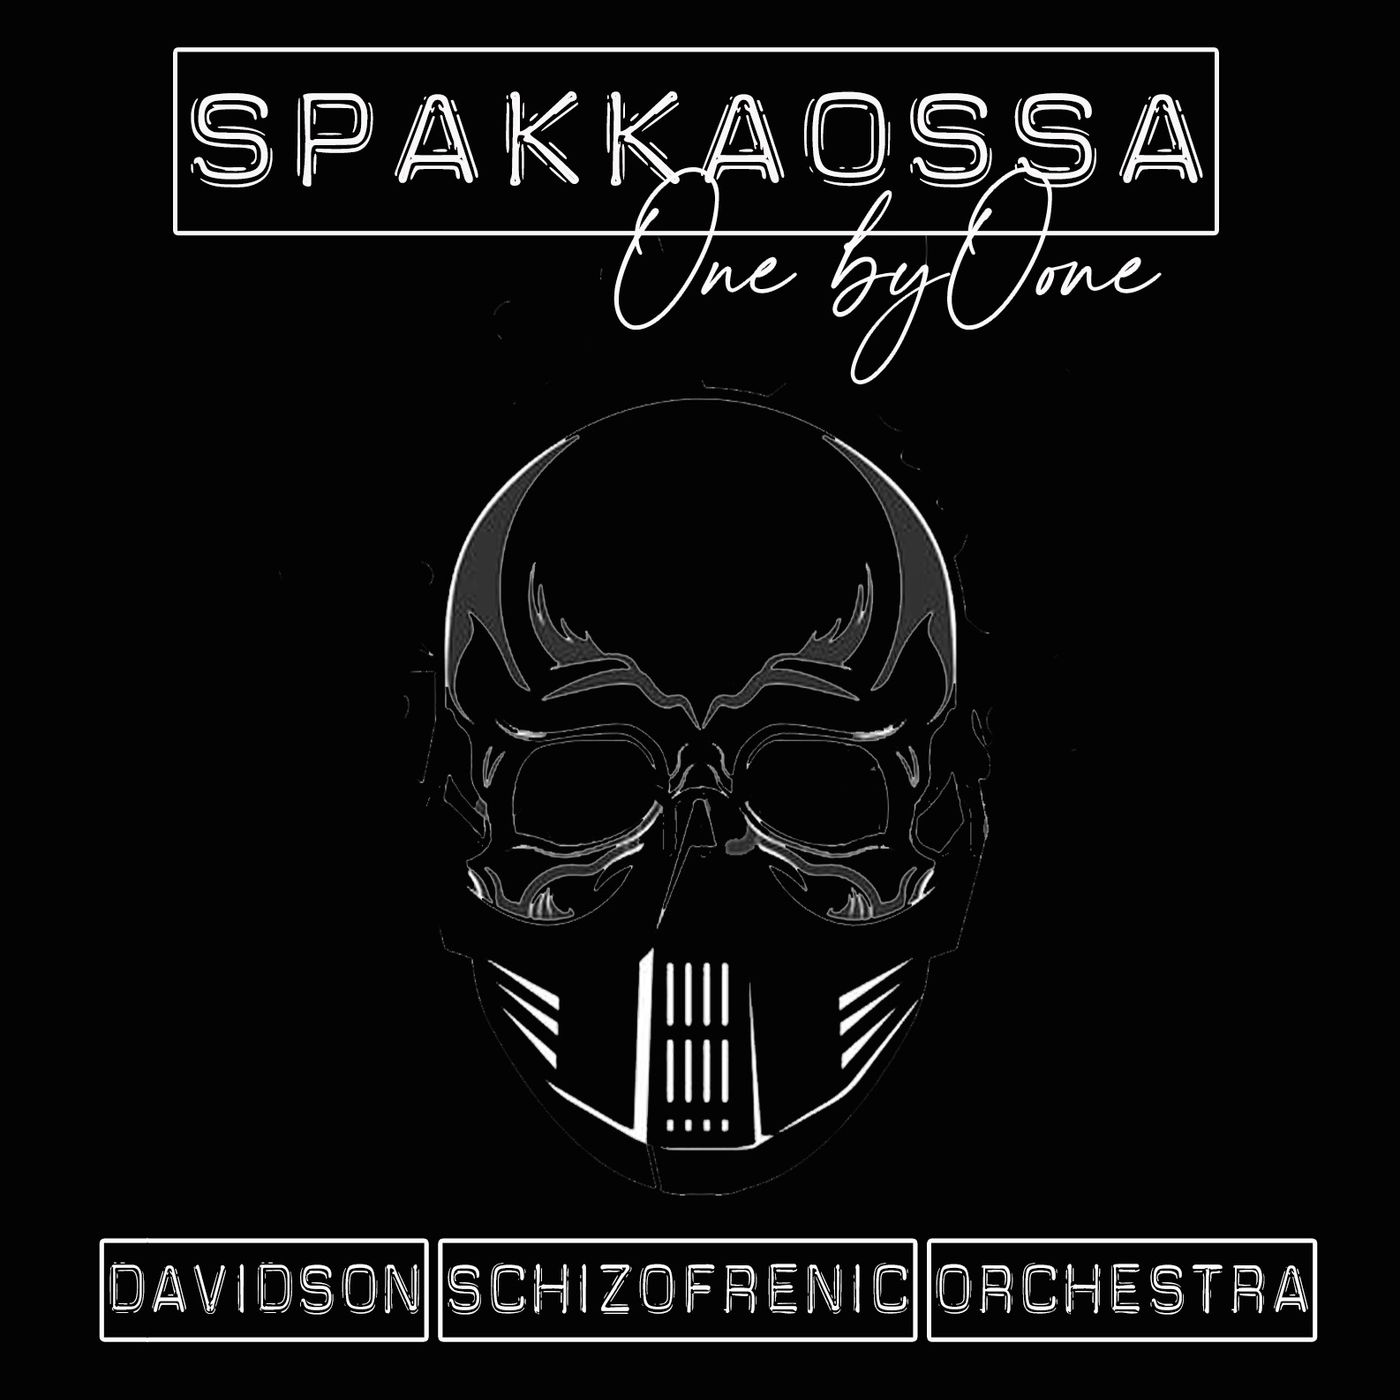 Spakkaossa - One by One